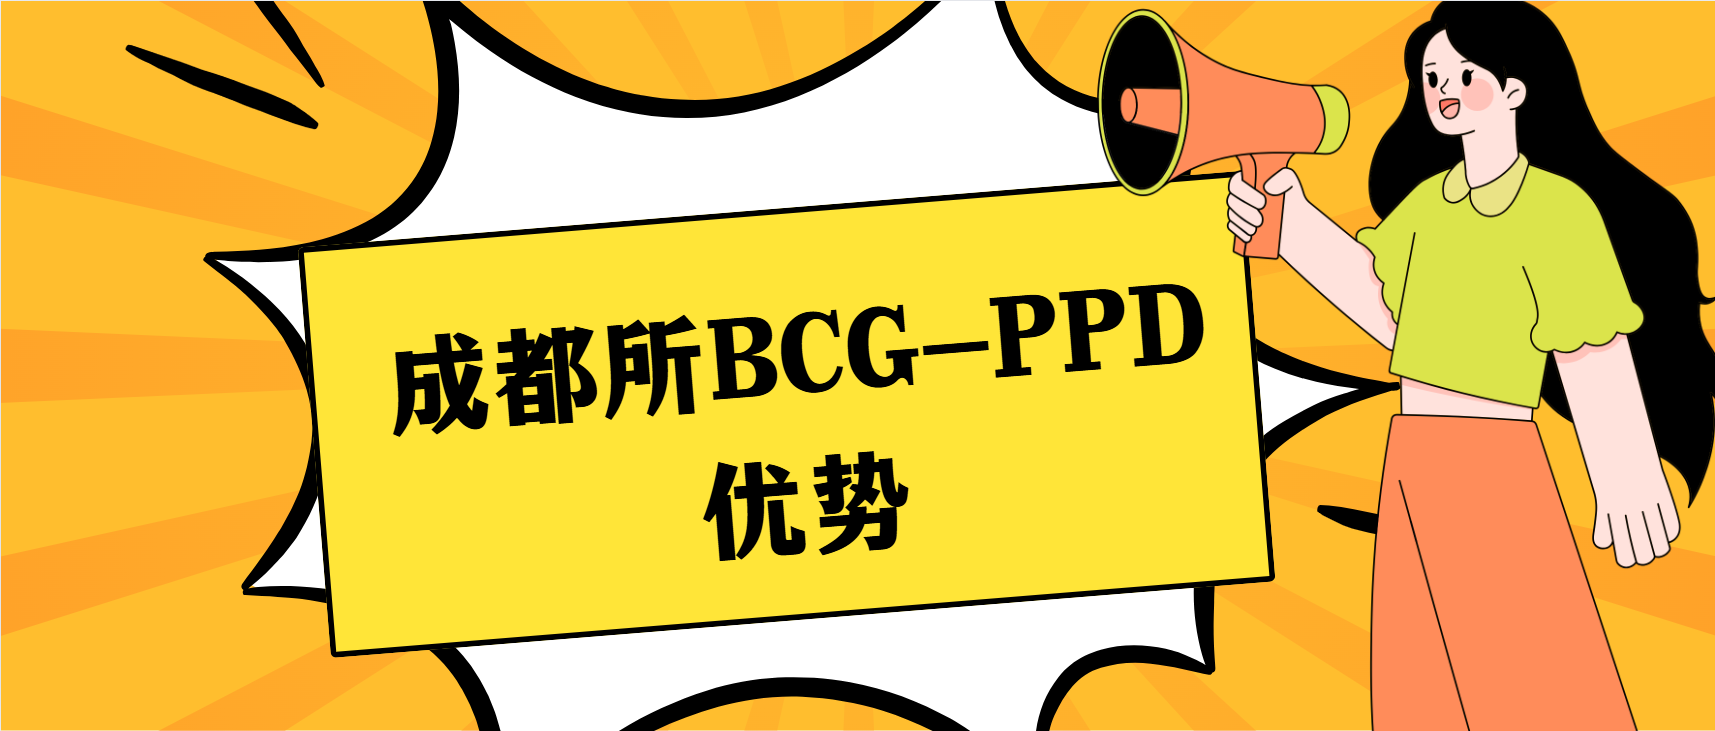 ɶ BCG-PPD